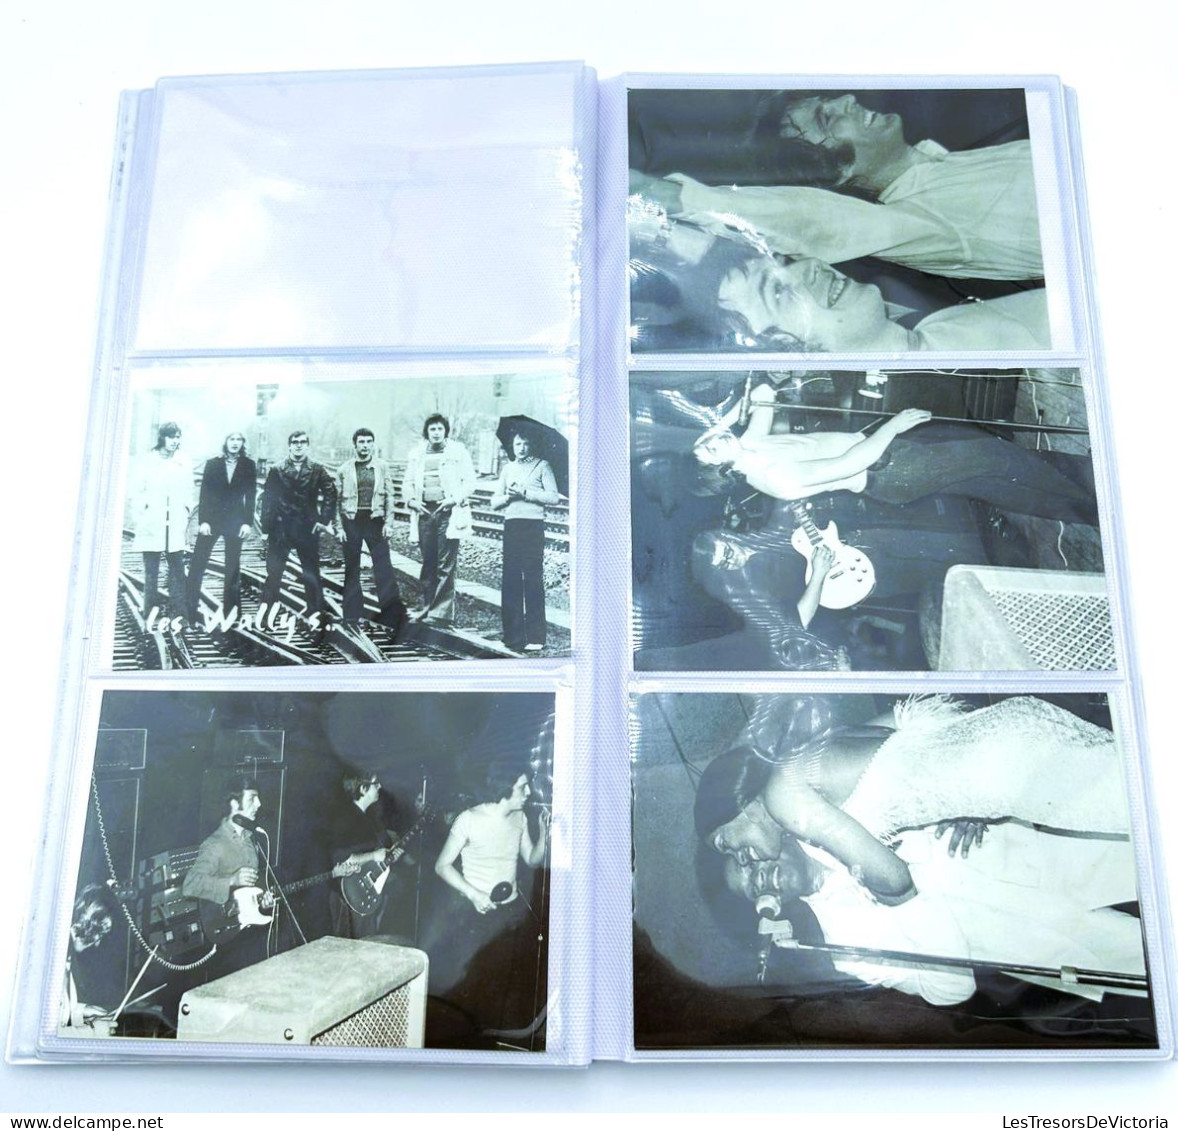 Album avec 41 photos et cartes d'artistes diver - Certaines dédicades - Les Wally's - Strikers - Dave - Dim:18/33 cm